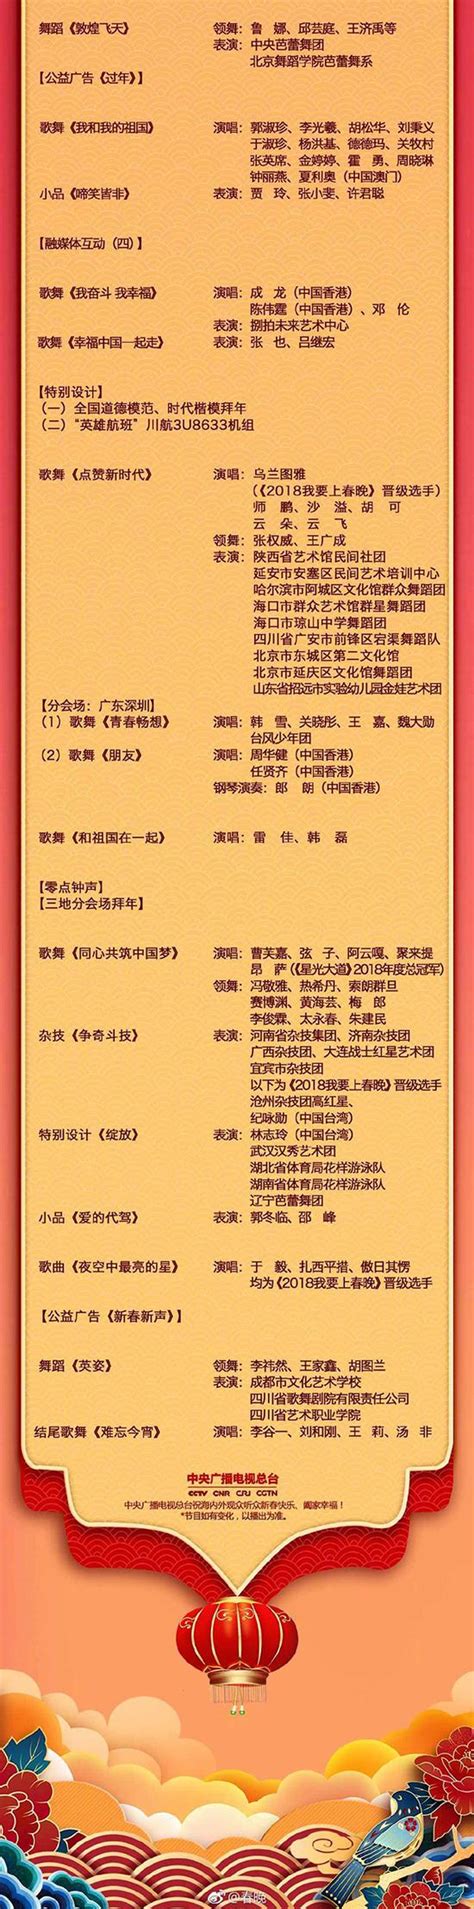 【神韵早期节目】大唐仕女（2011年制作） | 神韵作品 | 新唐人中文电视台在线